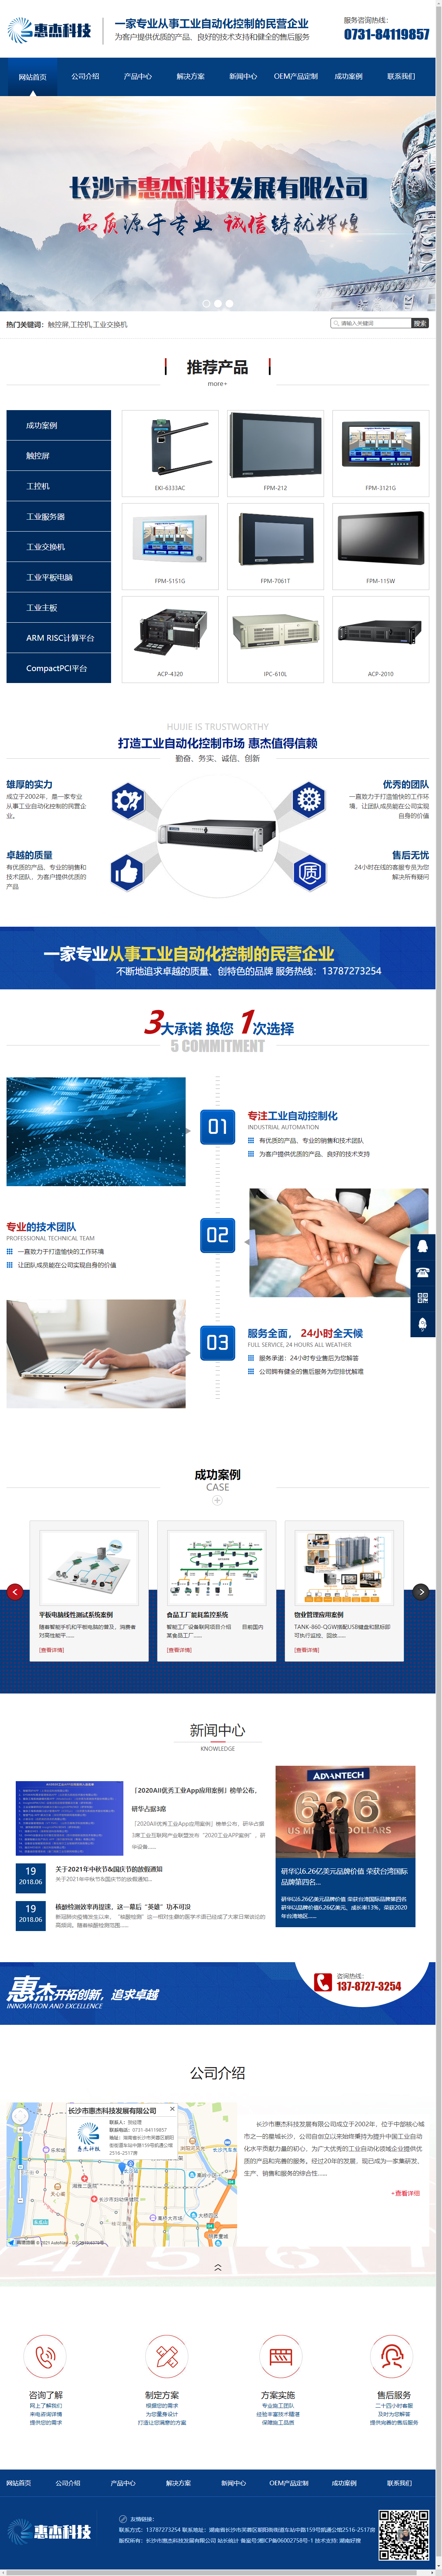 长沙市惠杰科技发展有限公司网站案例